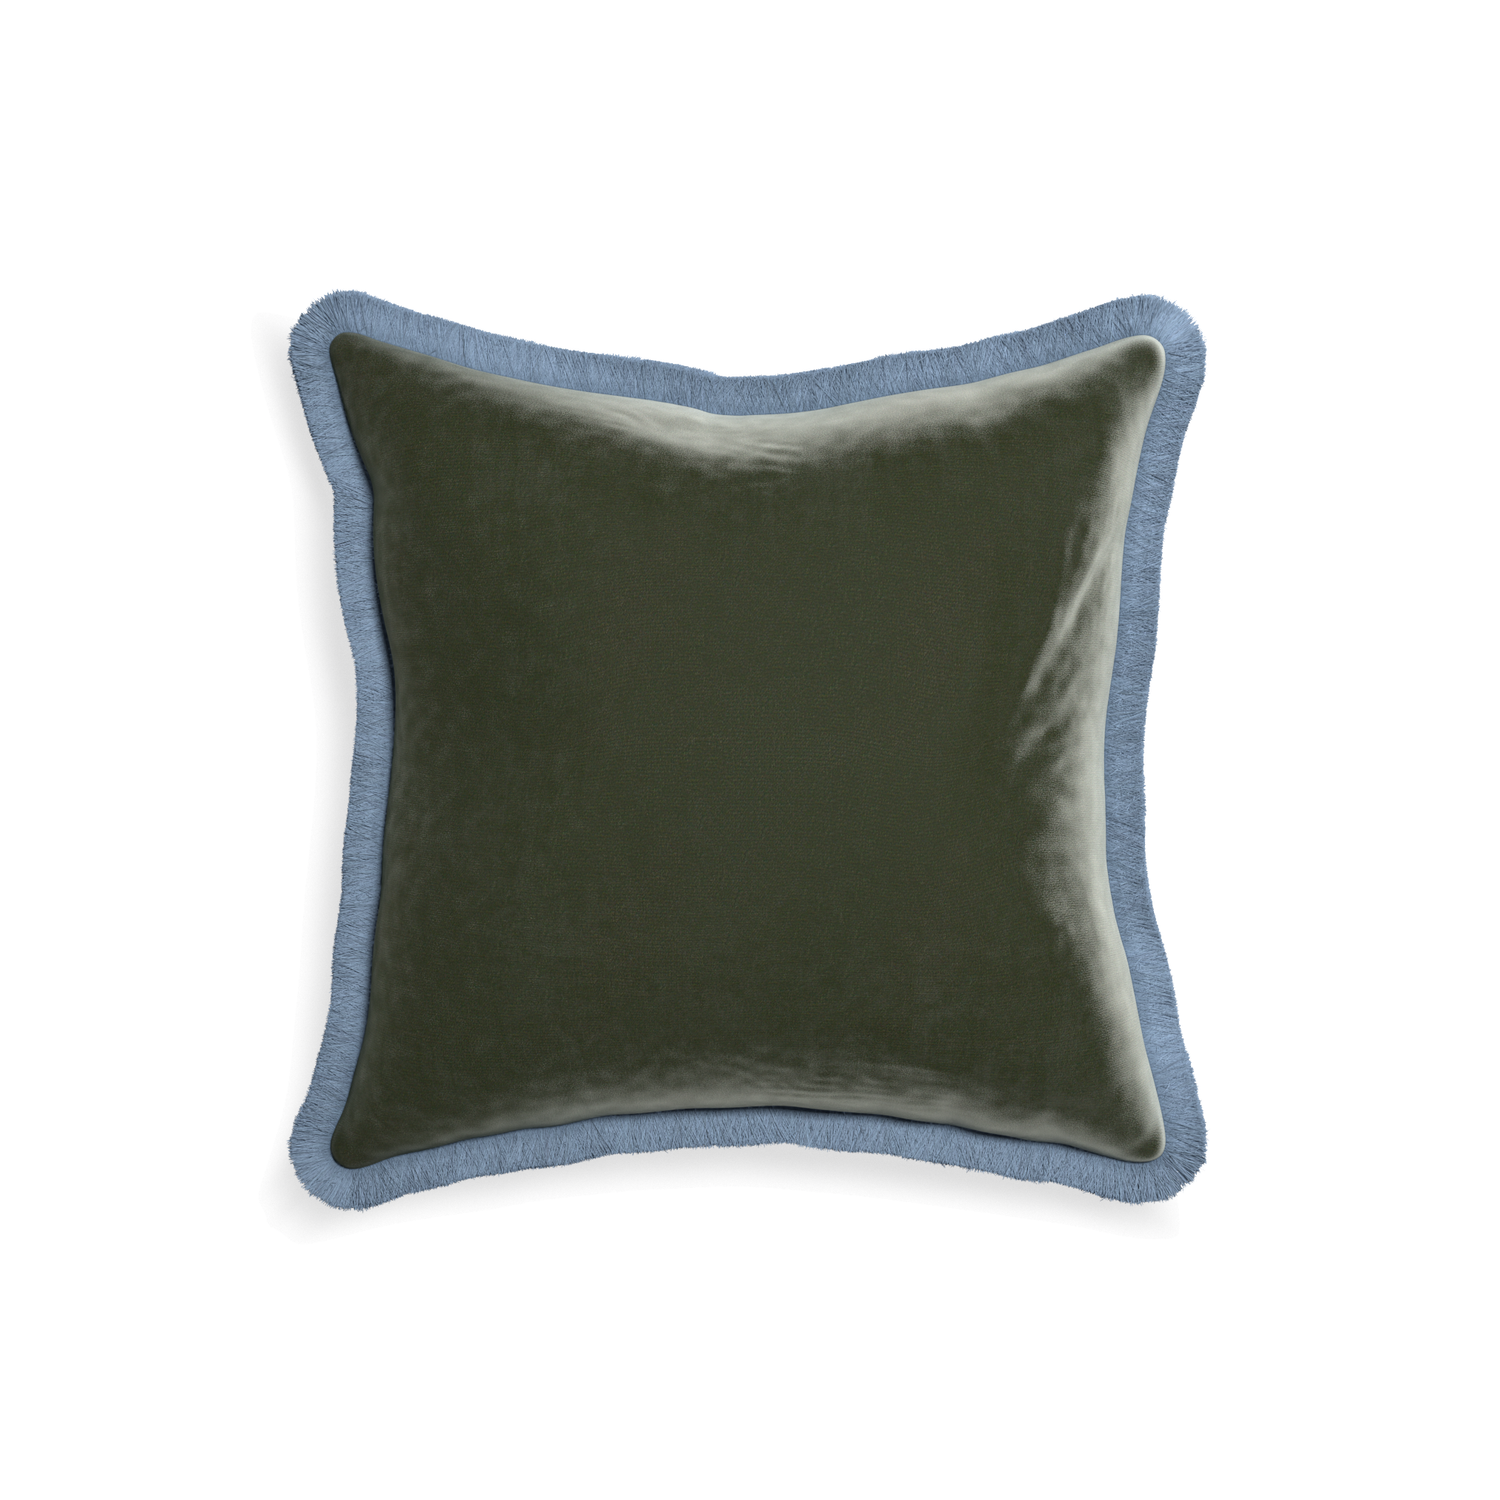 18-square fern velvet custom pillow with sky fringe on white background